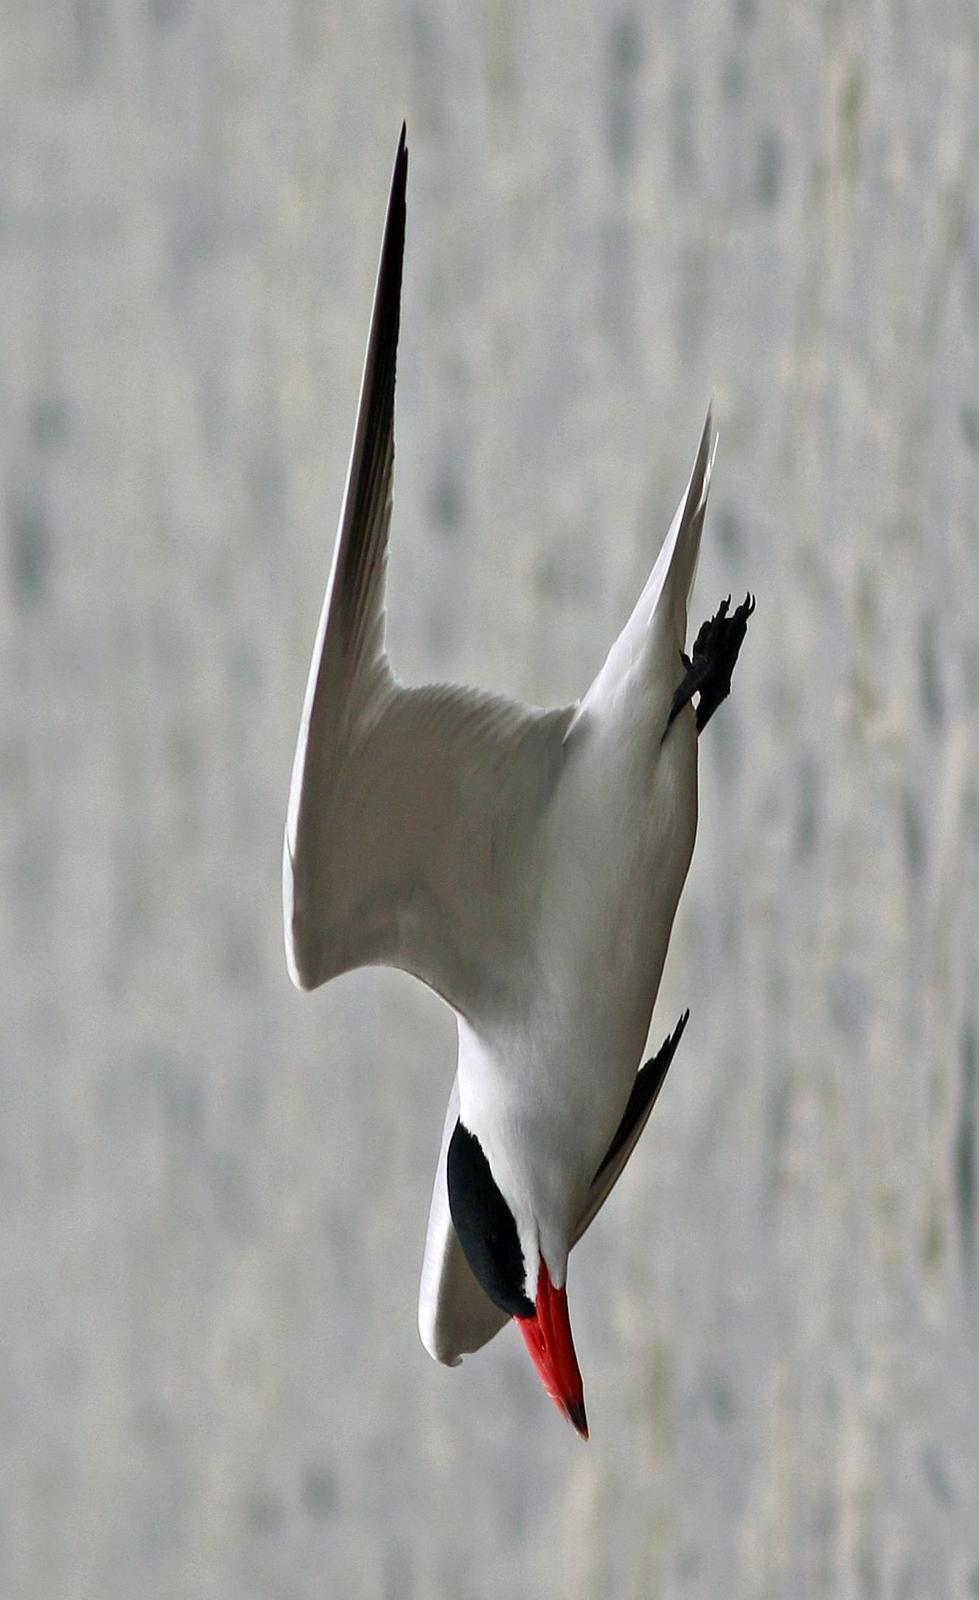 Caspian Tern Photo by Tom Gannon